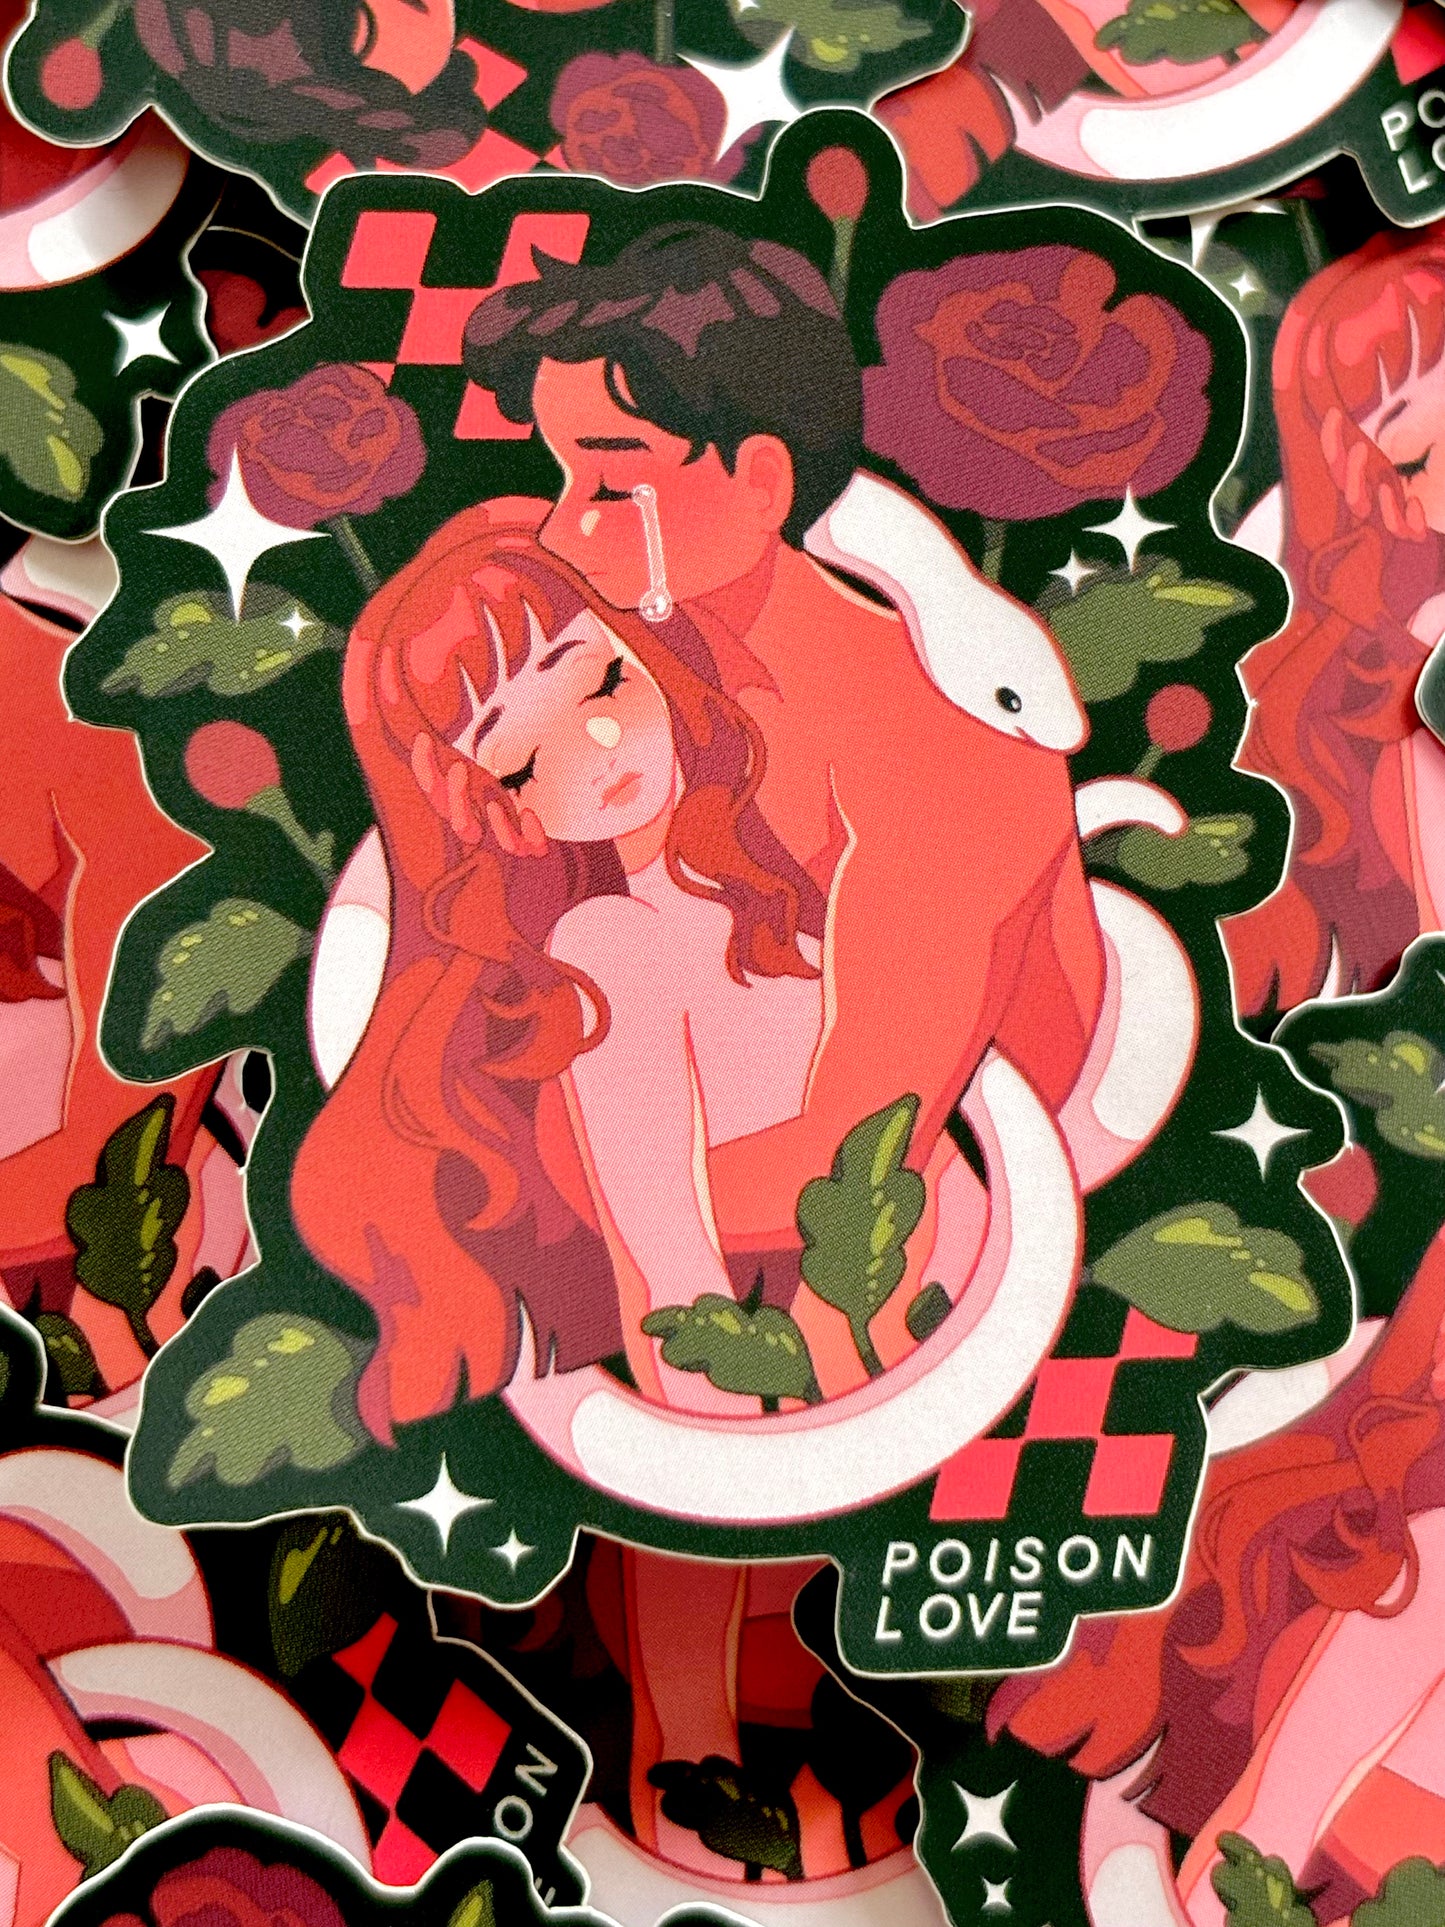 POISON LOVE - vinyl mirror sticker